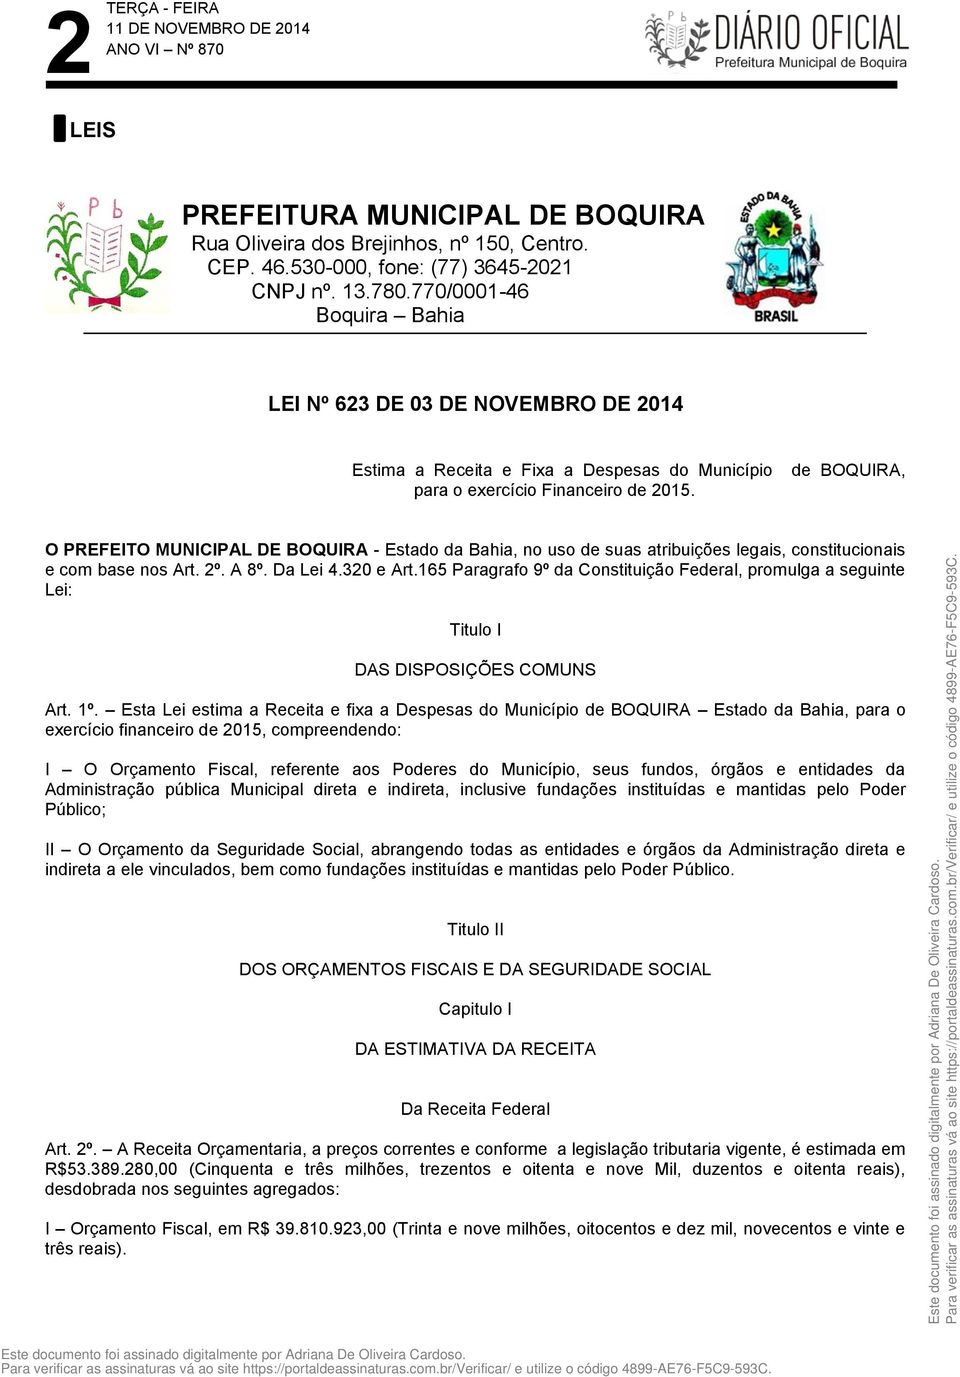 de BOQUIRA, O PREFEITO MUNICIPAL DE BOQUIRA - Estado da Bahia, no uso de suas atribuições legais, constitucionais e com base nos Art. 2º. A 8º. Da Lei 4.320 e Art.